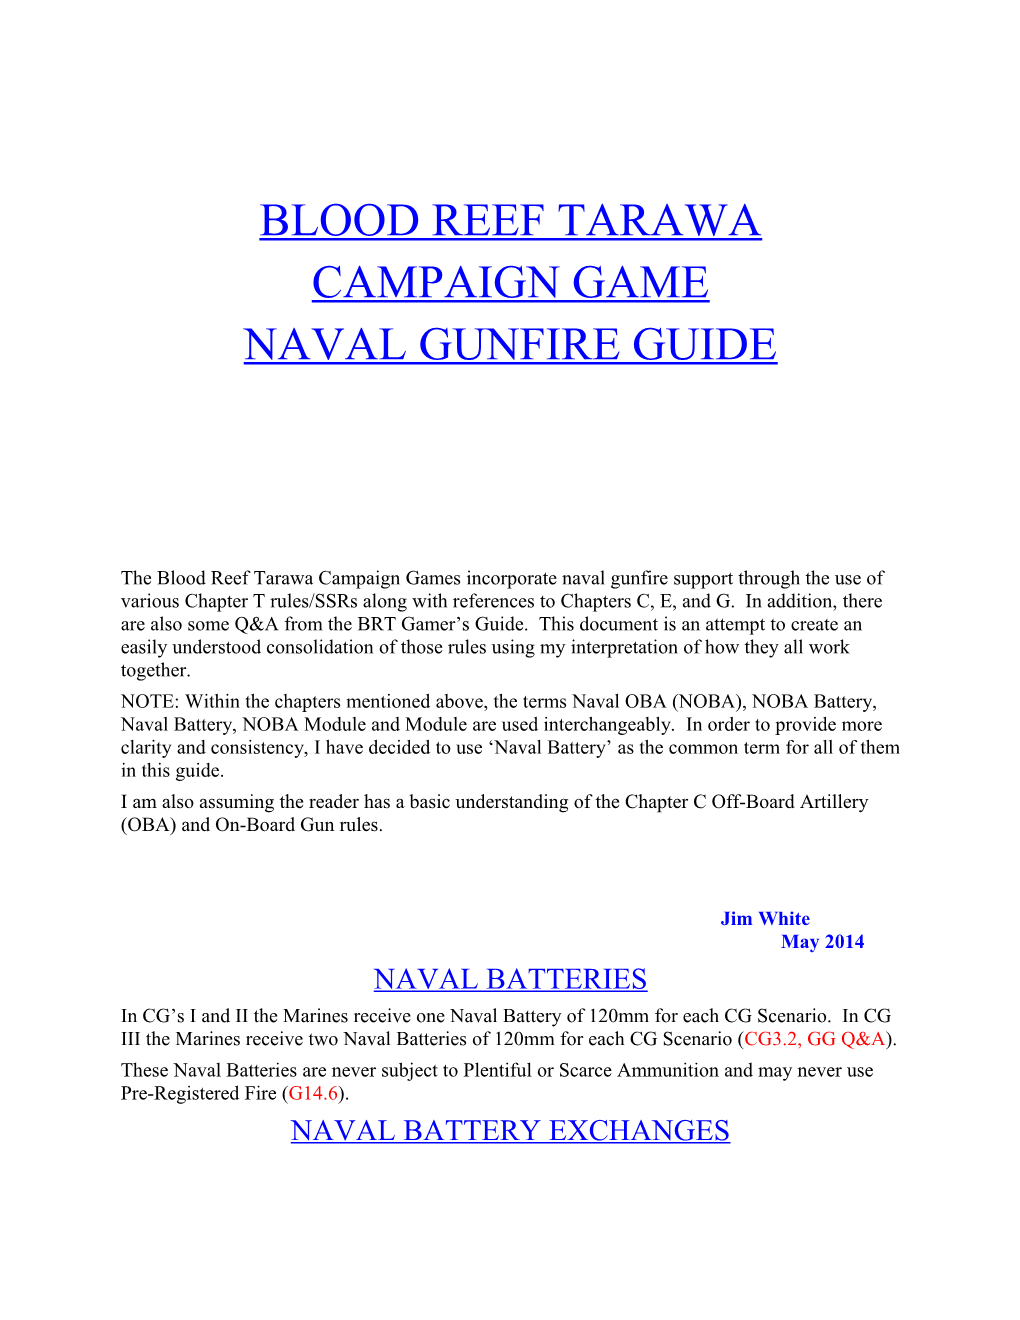 Blood Reef Tarawa